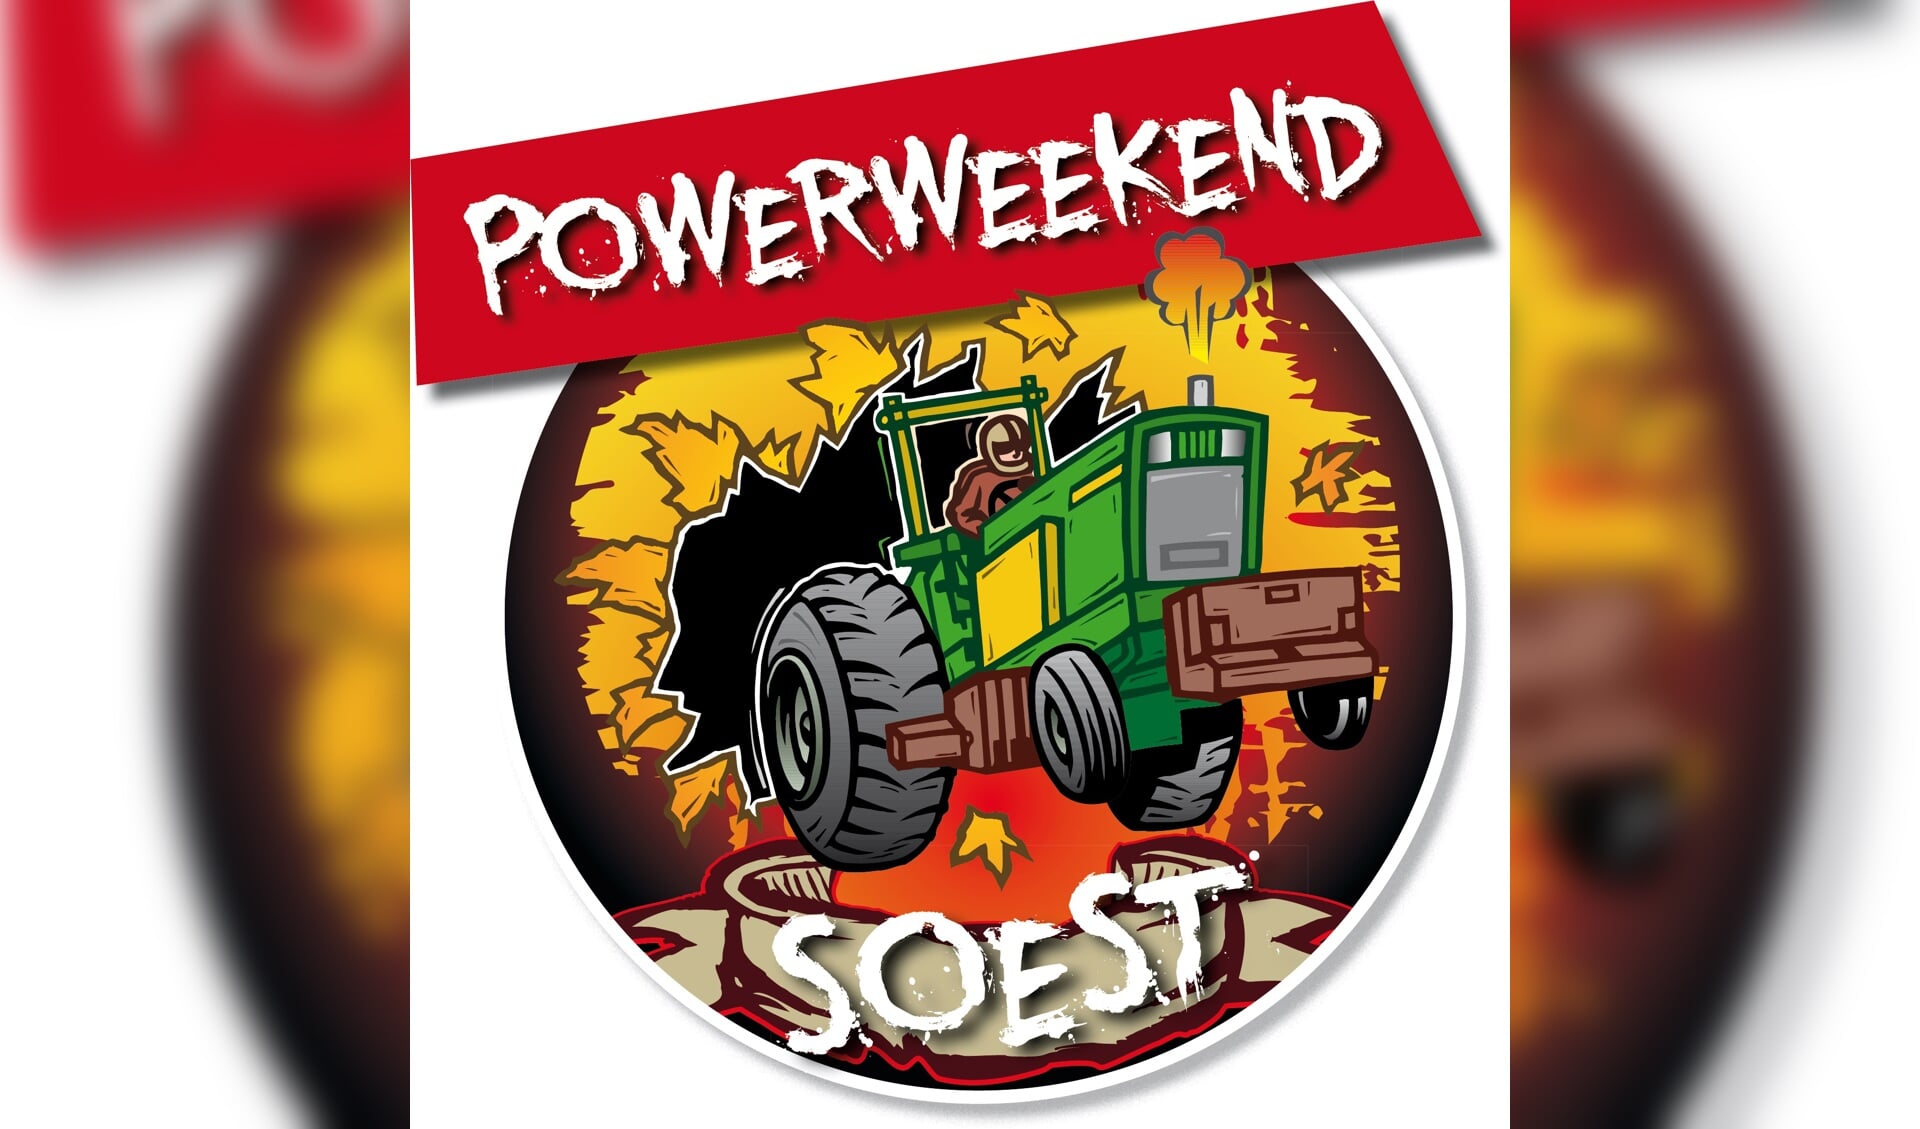 www.powerweekendsoest.nl